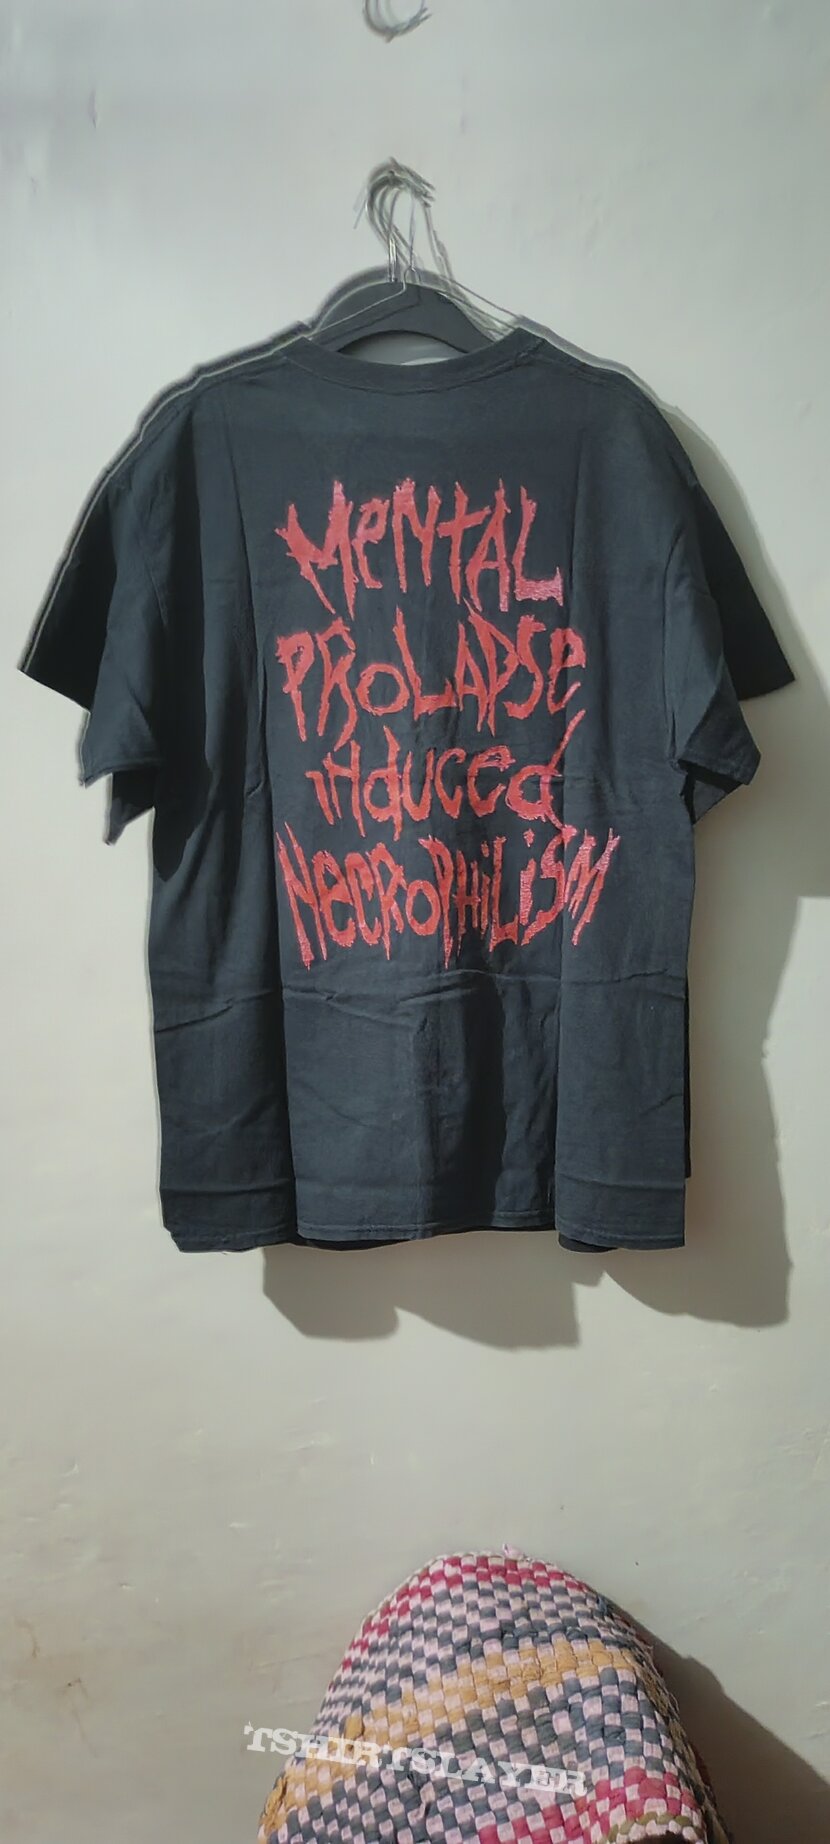 PUTRIDITY Mental Prolapse Induced Necrophilism shortsleeve shirt